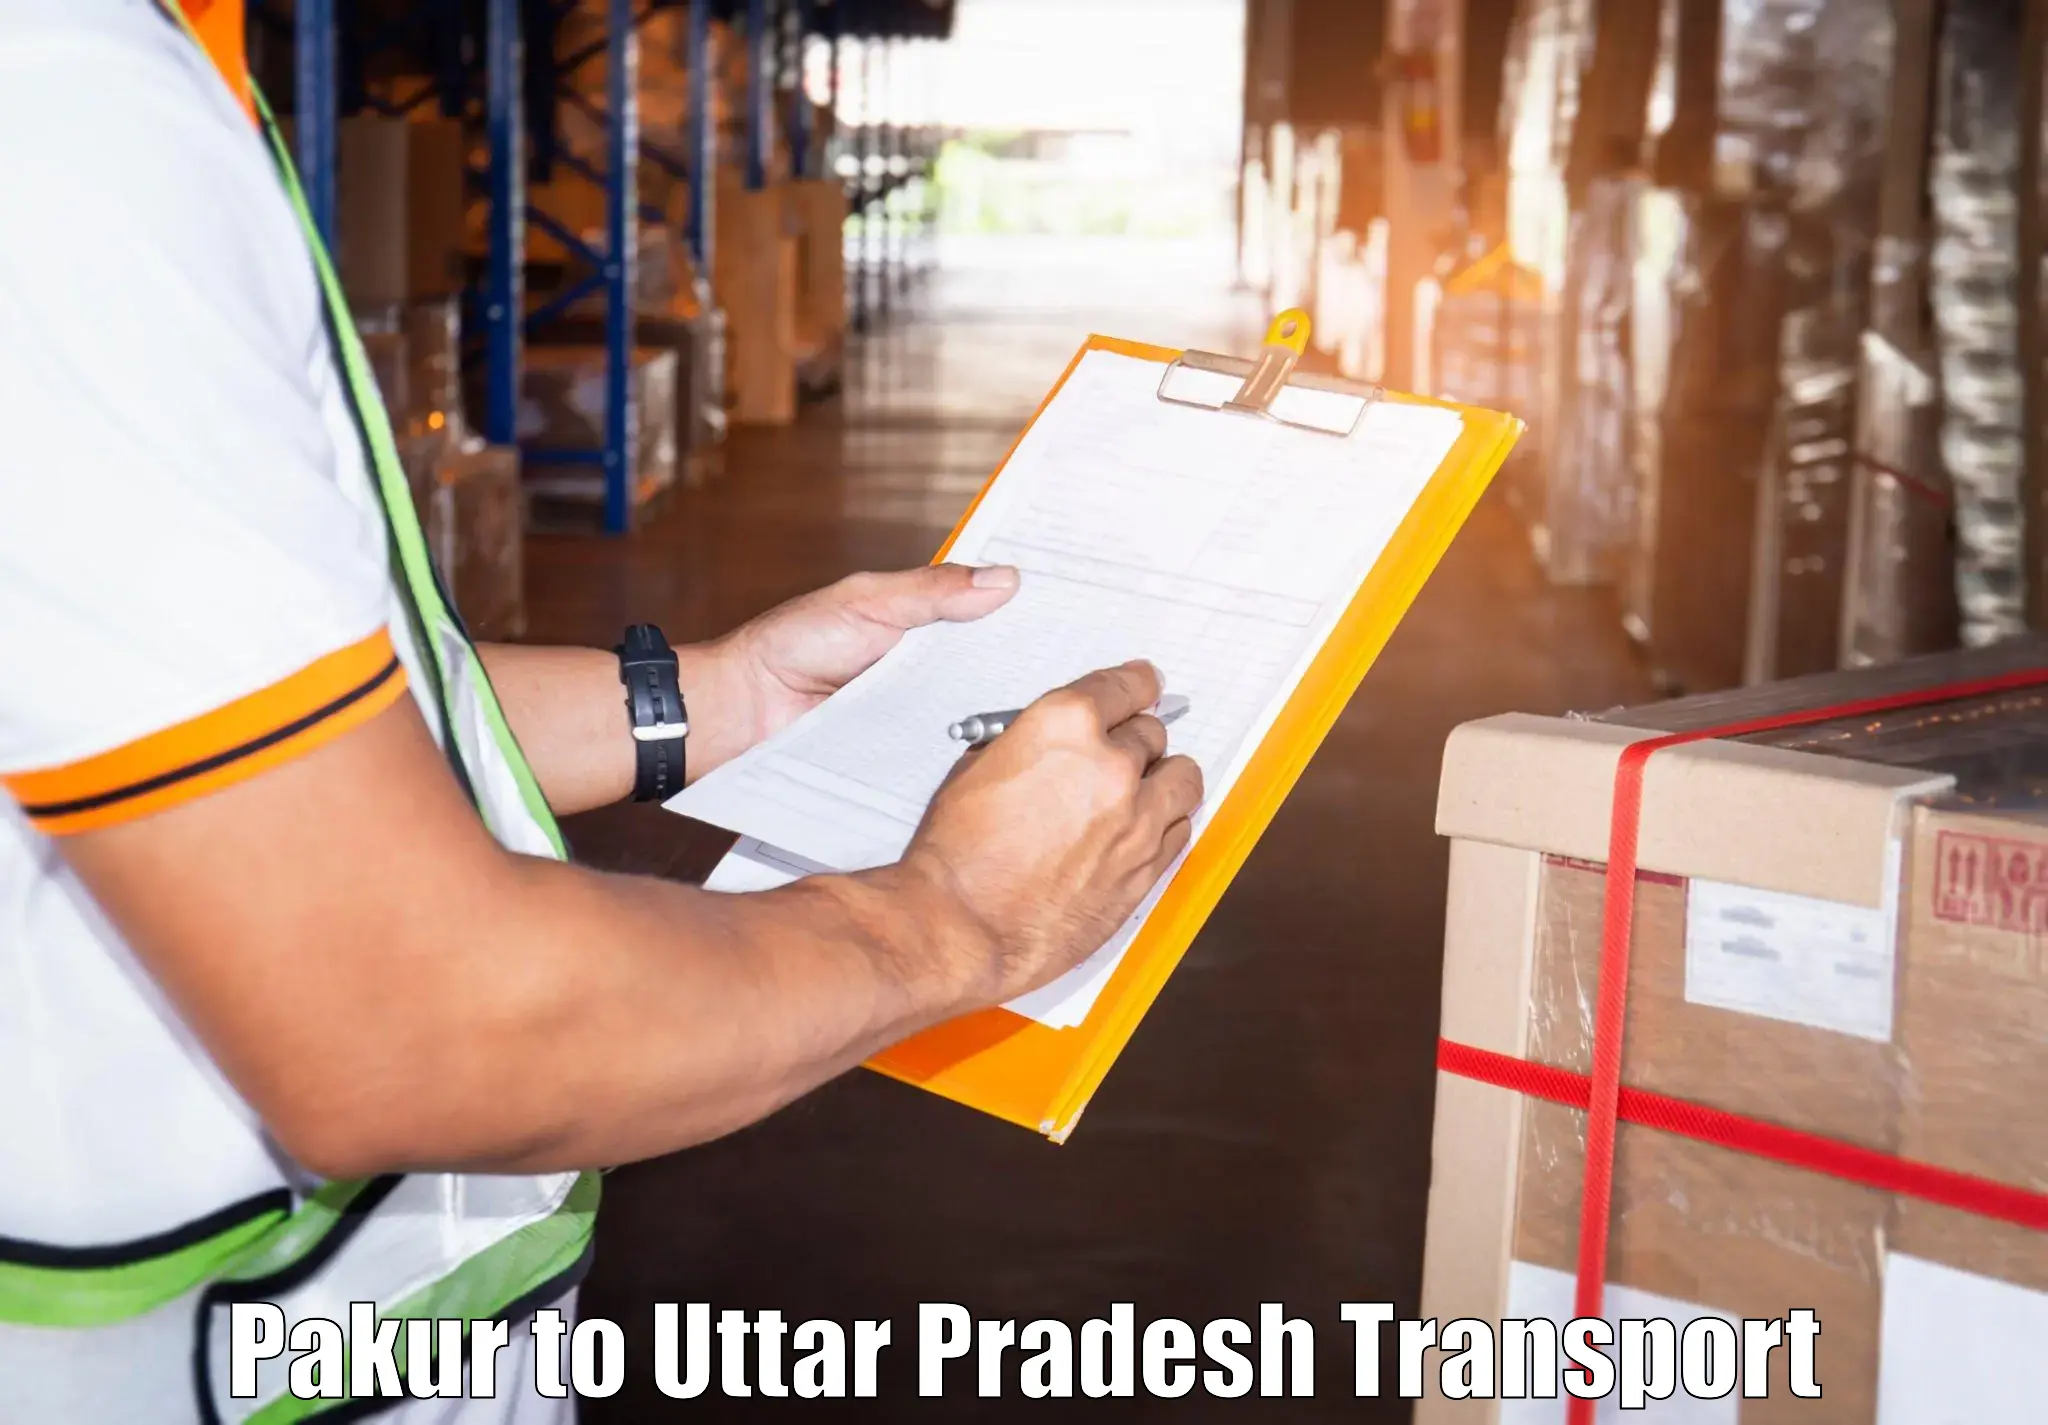 Two wheeler parcel service Pakur to Kannauj